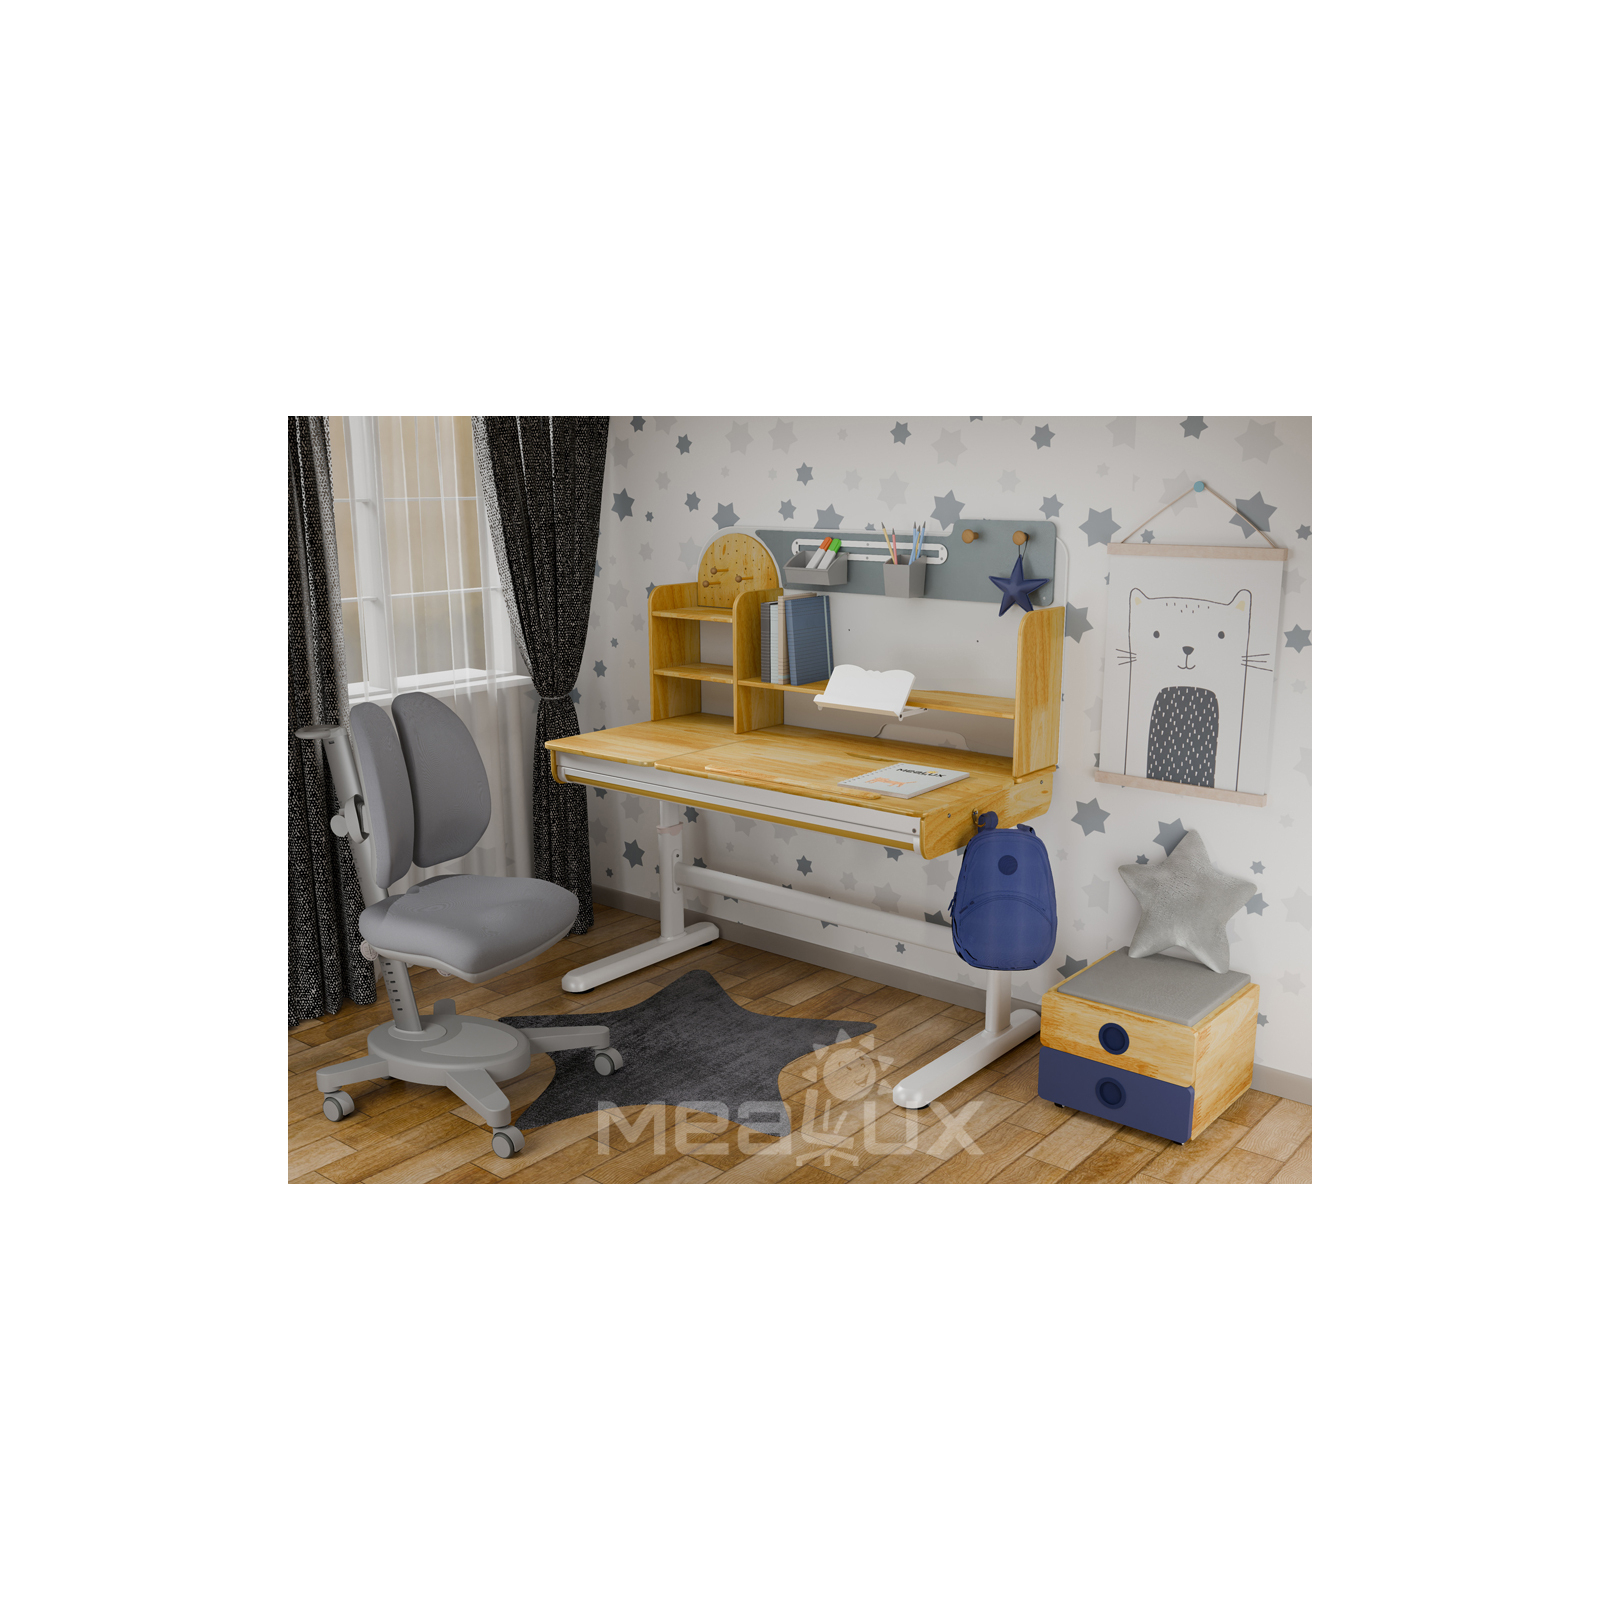 Парта с креслом Mealux Timberdesk L (парта+кресло+тумба) (BD-690 L+ box BD 920-2 BL+Y-115 G) изображение 2